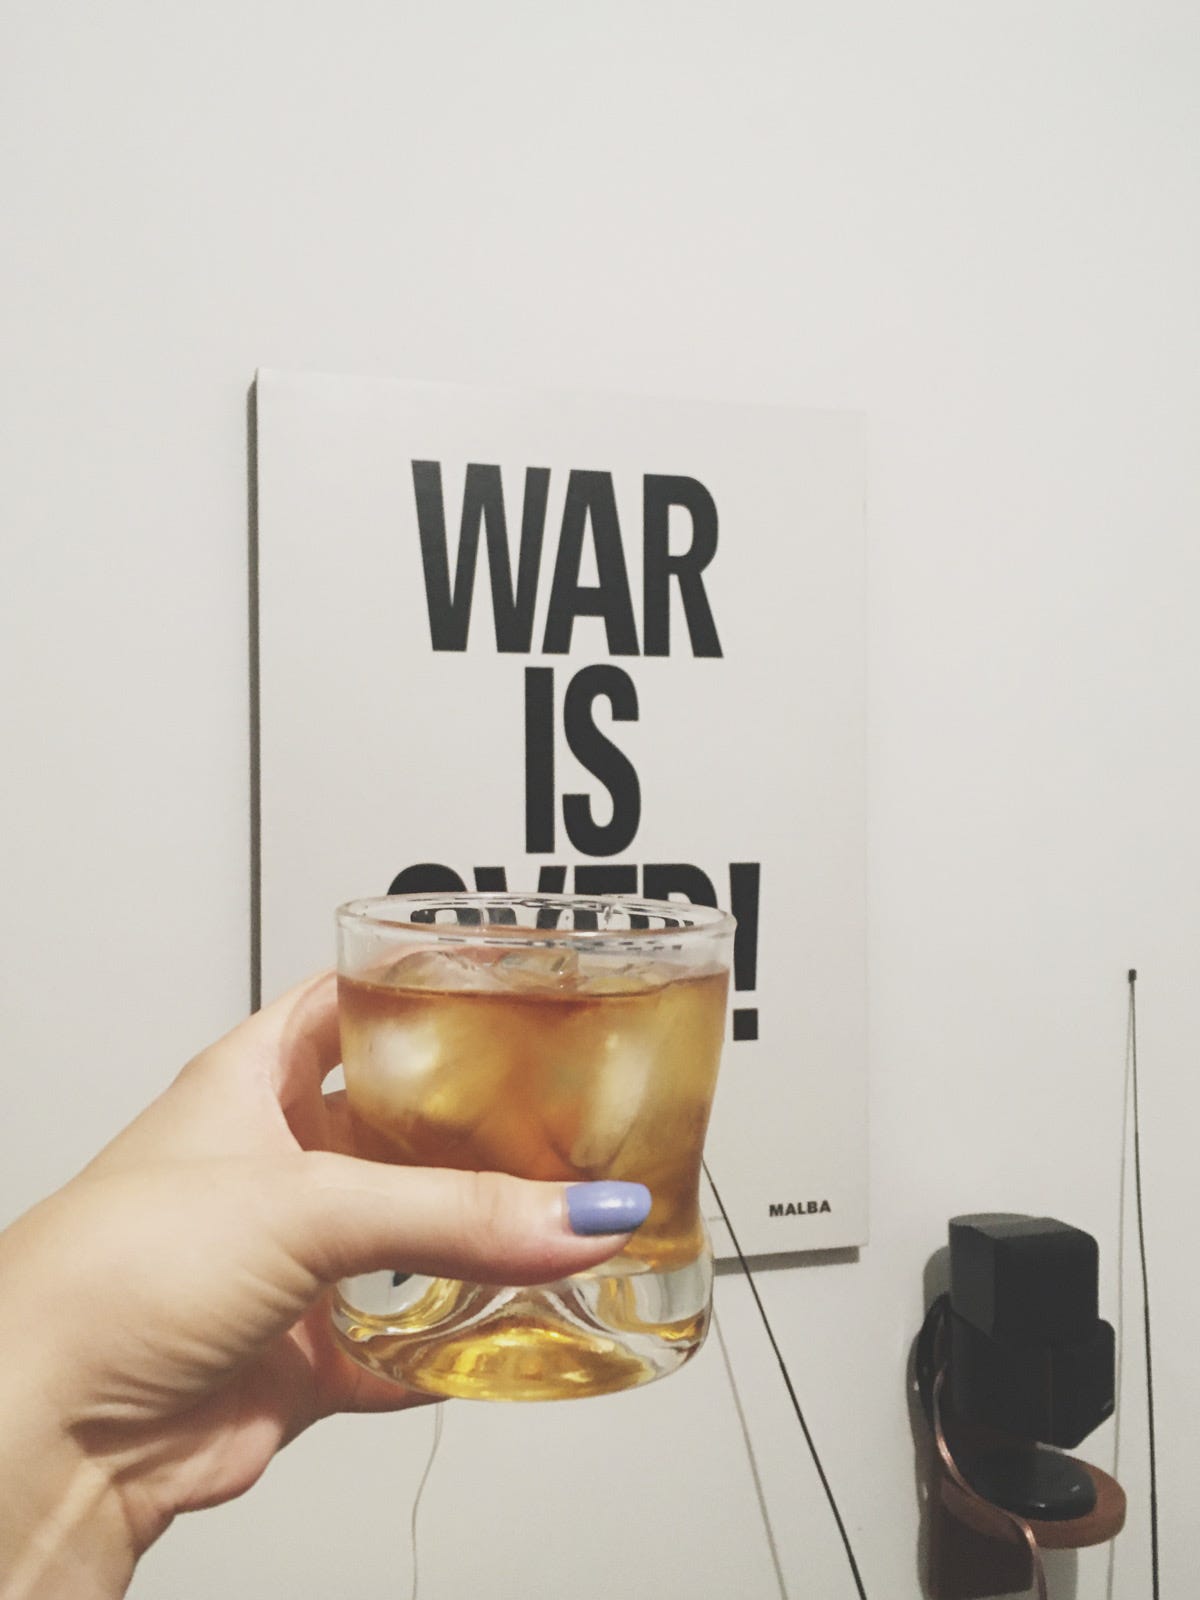 Foto em que estou com o braço estendido segurando um copo de uísque e ao fundo tem um poster na parede escrito WAR IS OVER